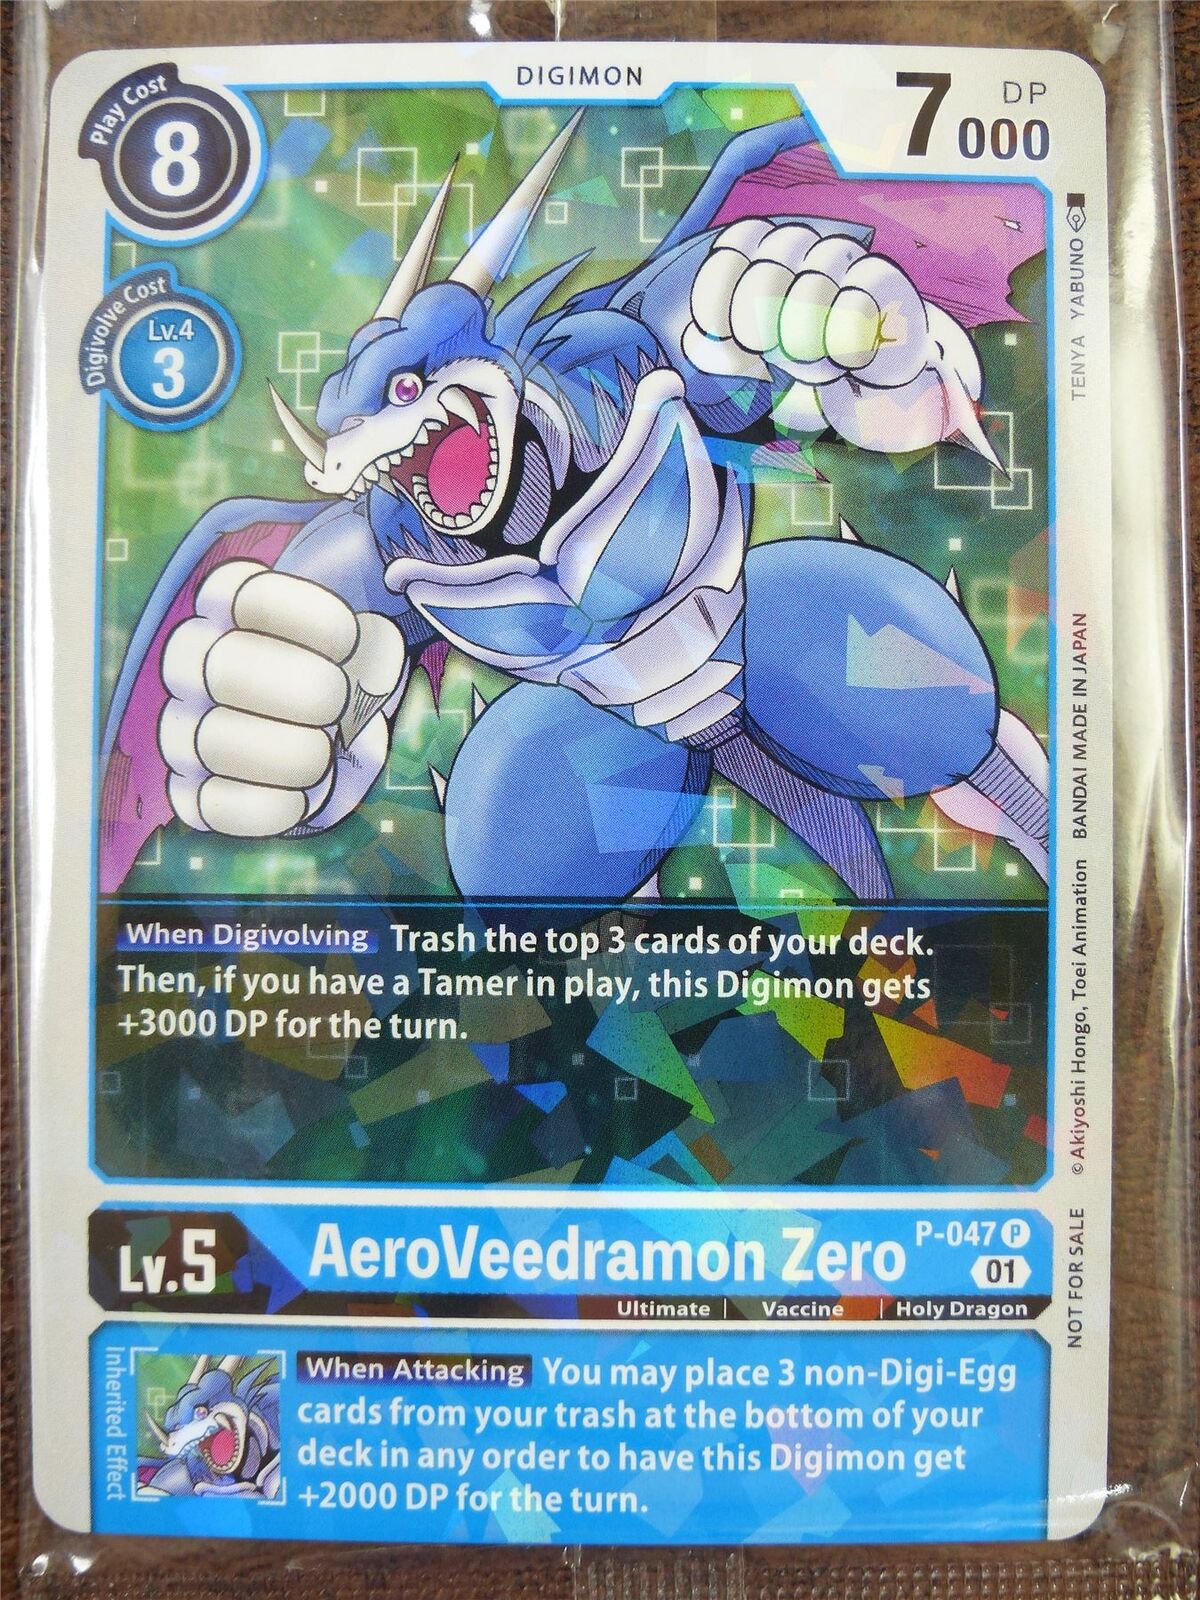 AeroVeedramon Zero P-047 Promo sealed: Digimon Card